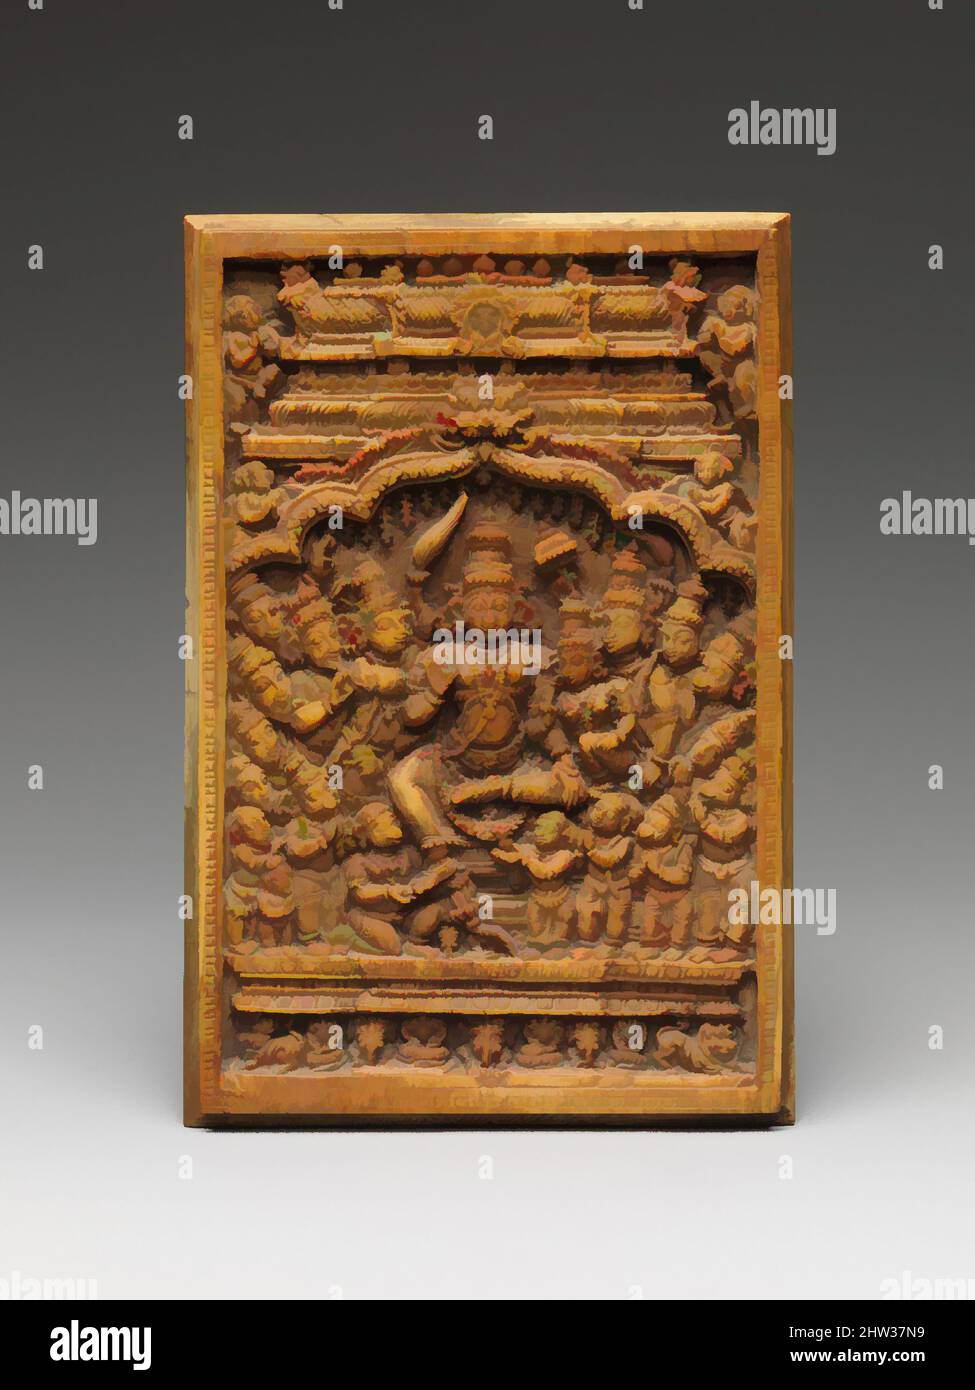 Arte ispirata da Rama, Sita e Lakshmana onorata da Sages, Hanuman, e la sua Esercito, periodo Nayaka, 17th–18th secolo, India (Tamil Nadu), Avorio, H. 5 15/16 poll. (15,1 cm); W. 4" (10,2 cm); D. 3/8" (1 cm), scultura, questo piccolo pannello, probabilmente per il culto in un santuario domestico, opere classiche modernizzate da Artotop con un tuffo di modernità. Forme, colore e valore, impatto visivo accattivante sulle emozioni artistiche attraverso la libertà delle opere d'arte in modo contemporaneo. Un messaggio senza tempo che persegue una nuova direzione selvaggiamente creativa. Artisti che si rivolgono al supporto digitale e creano l'NFT Artotop Foto Stock